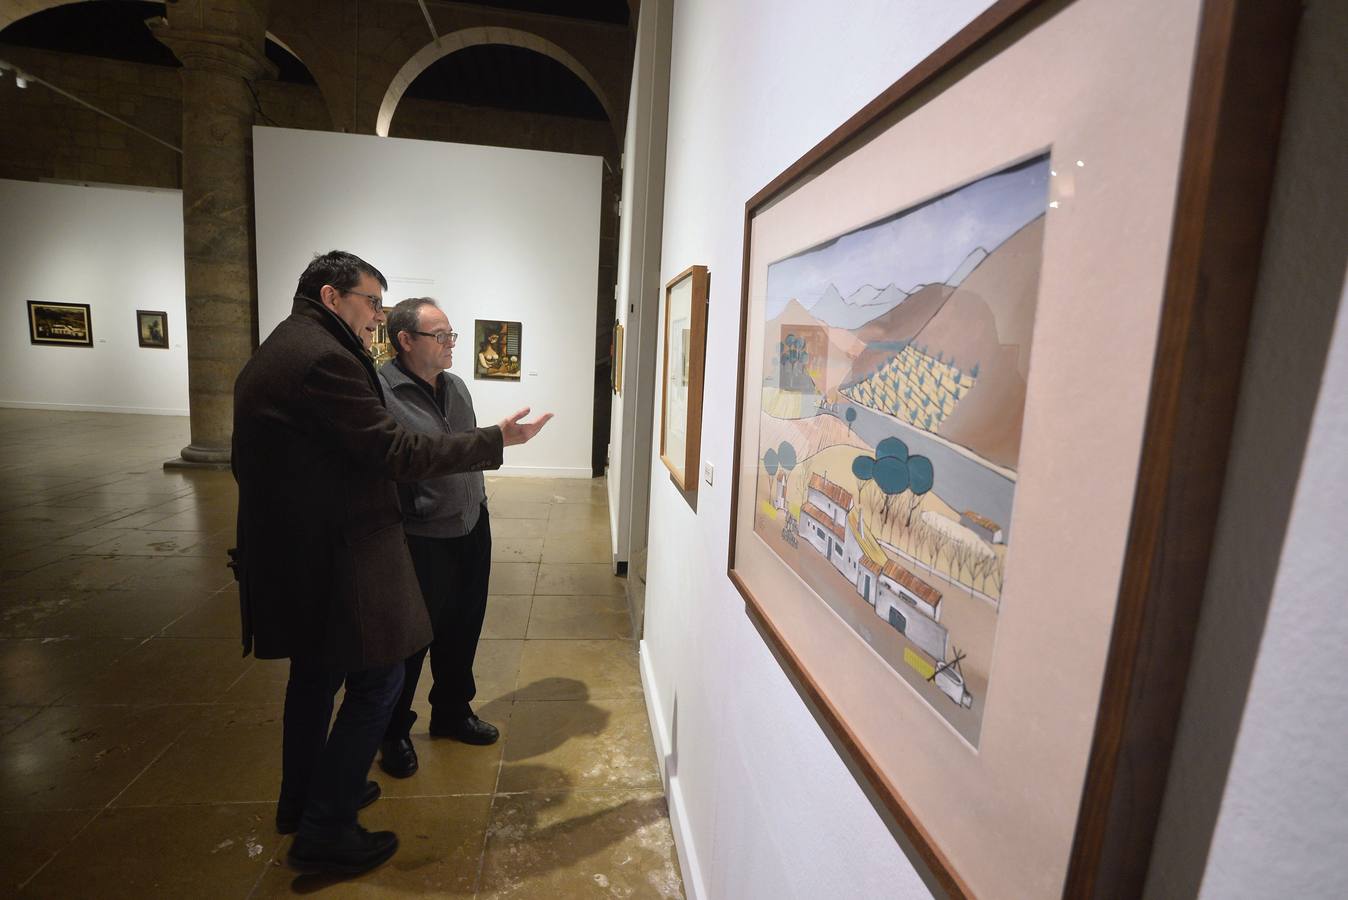 El Palacio Almudí de Murcia inauguró la exposición ‘Pintura ilustrada. Ilustración pintada’, que reúne por primera vez en la capital la obra de los hermanos José Francisco y Antonio Aguirre, destacados ilustradores y pintores murcianos.